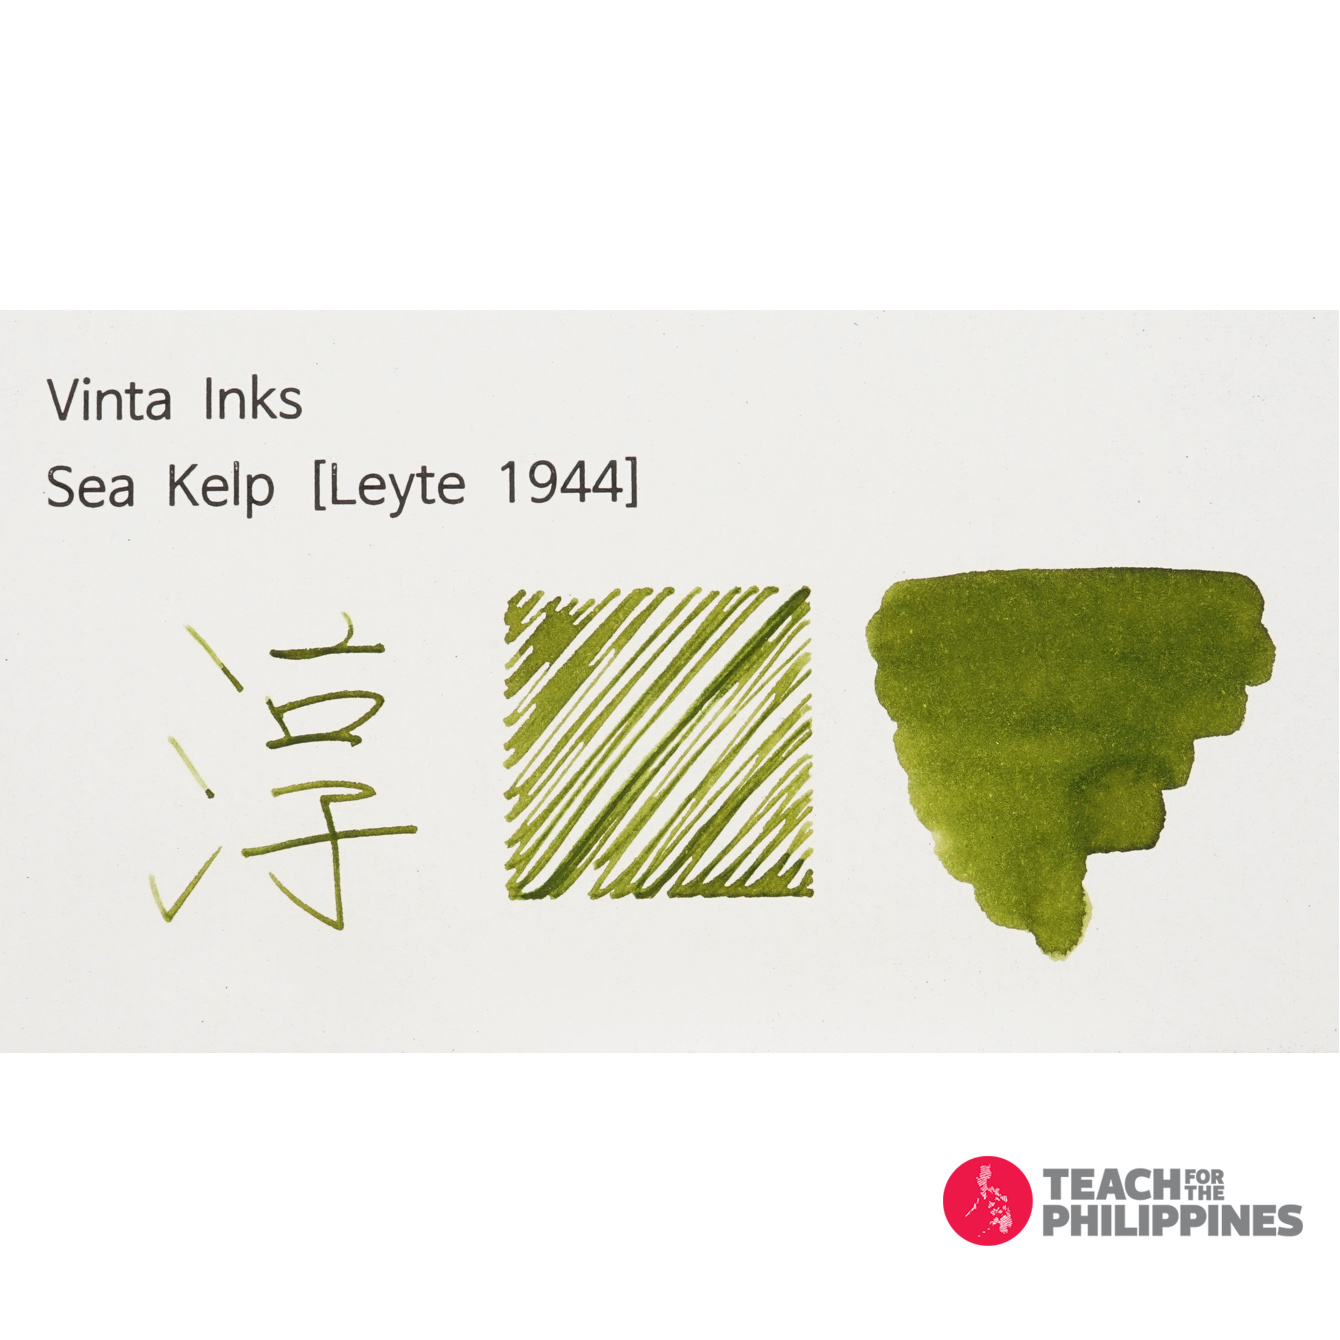 빈타 병 잉크 씨 켈프 레이테 Sea Kelp Leyte